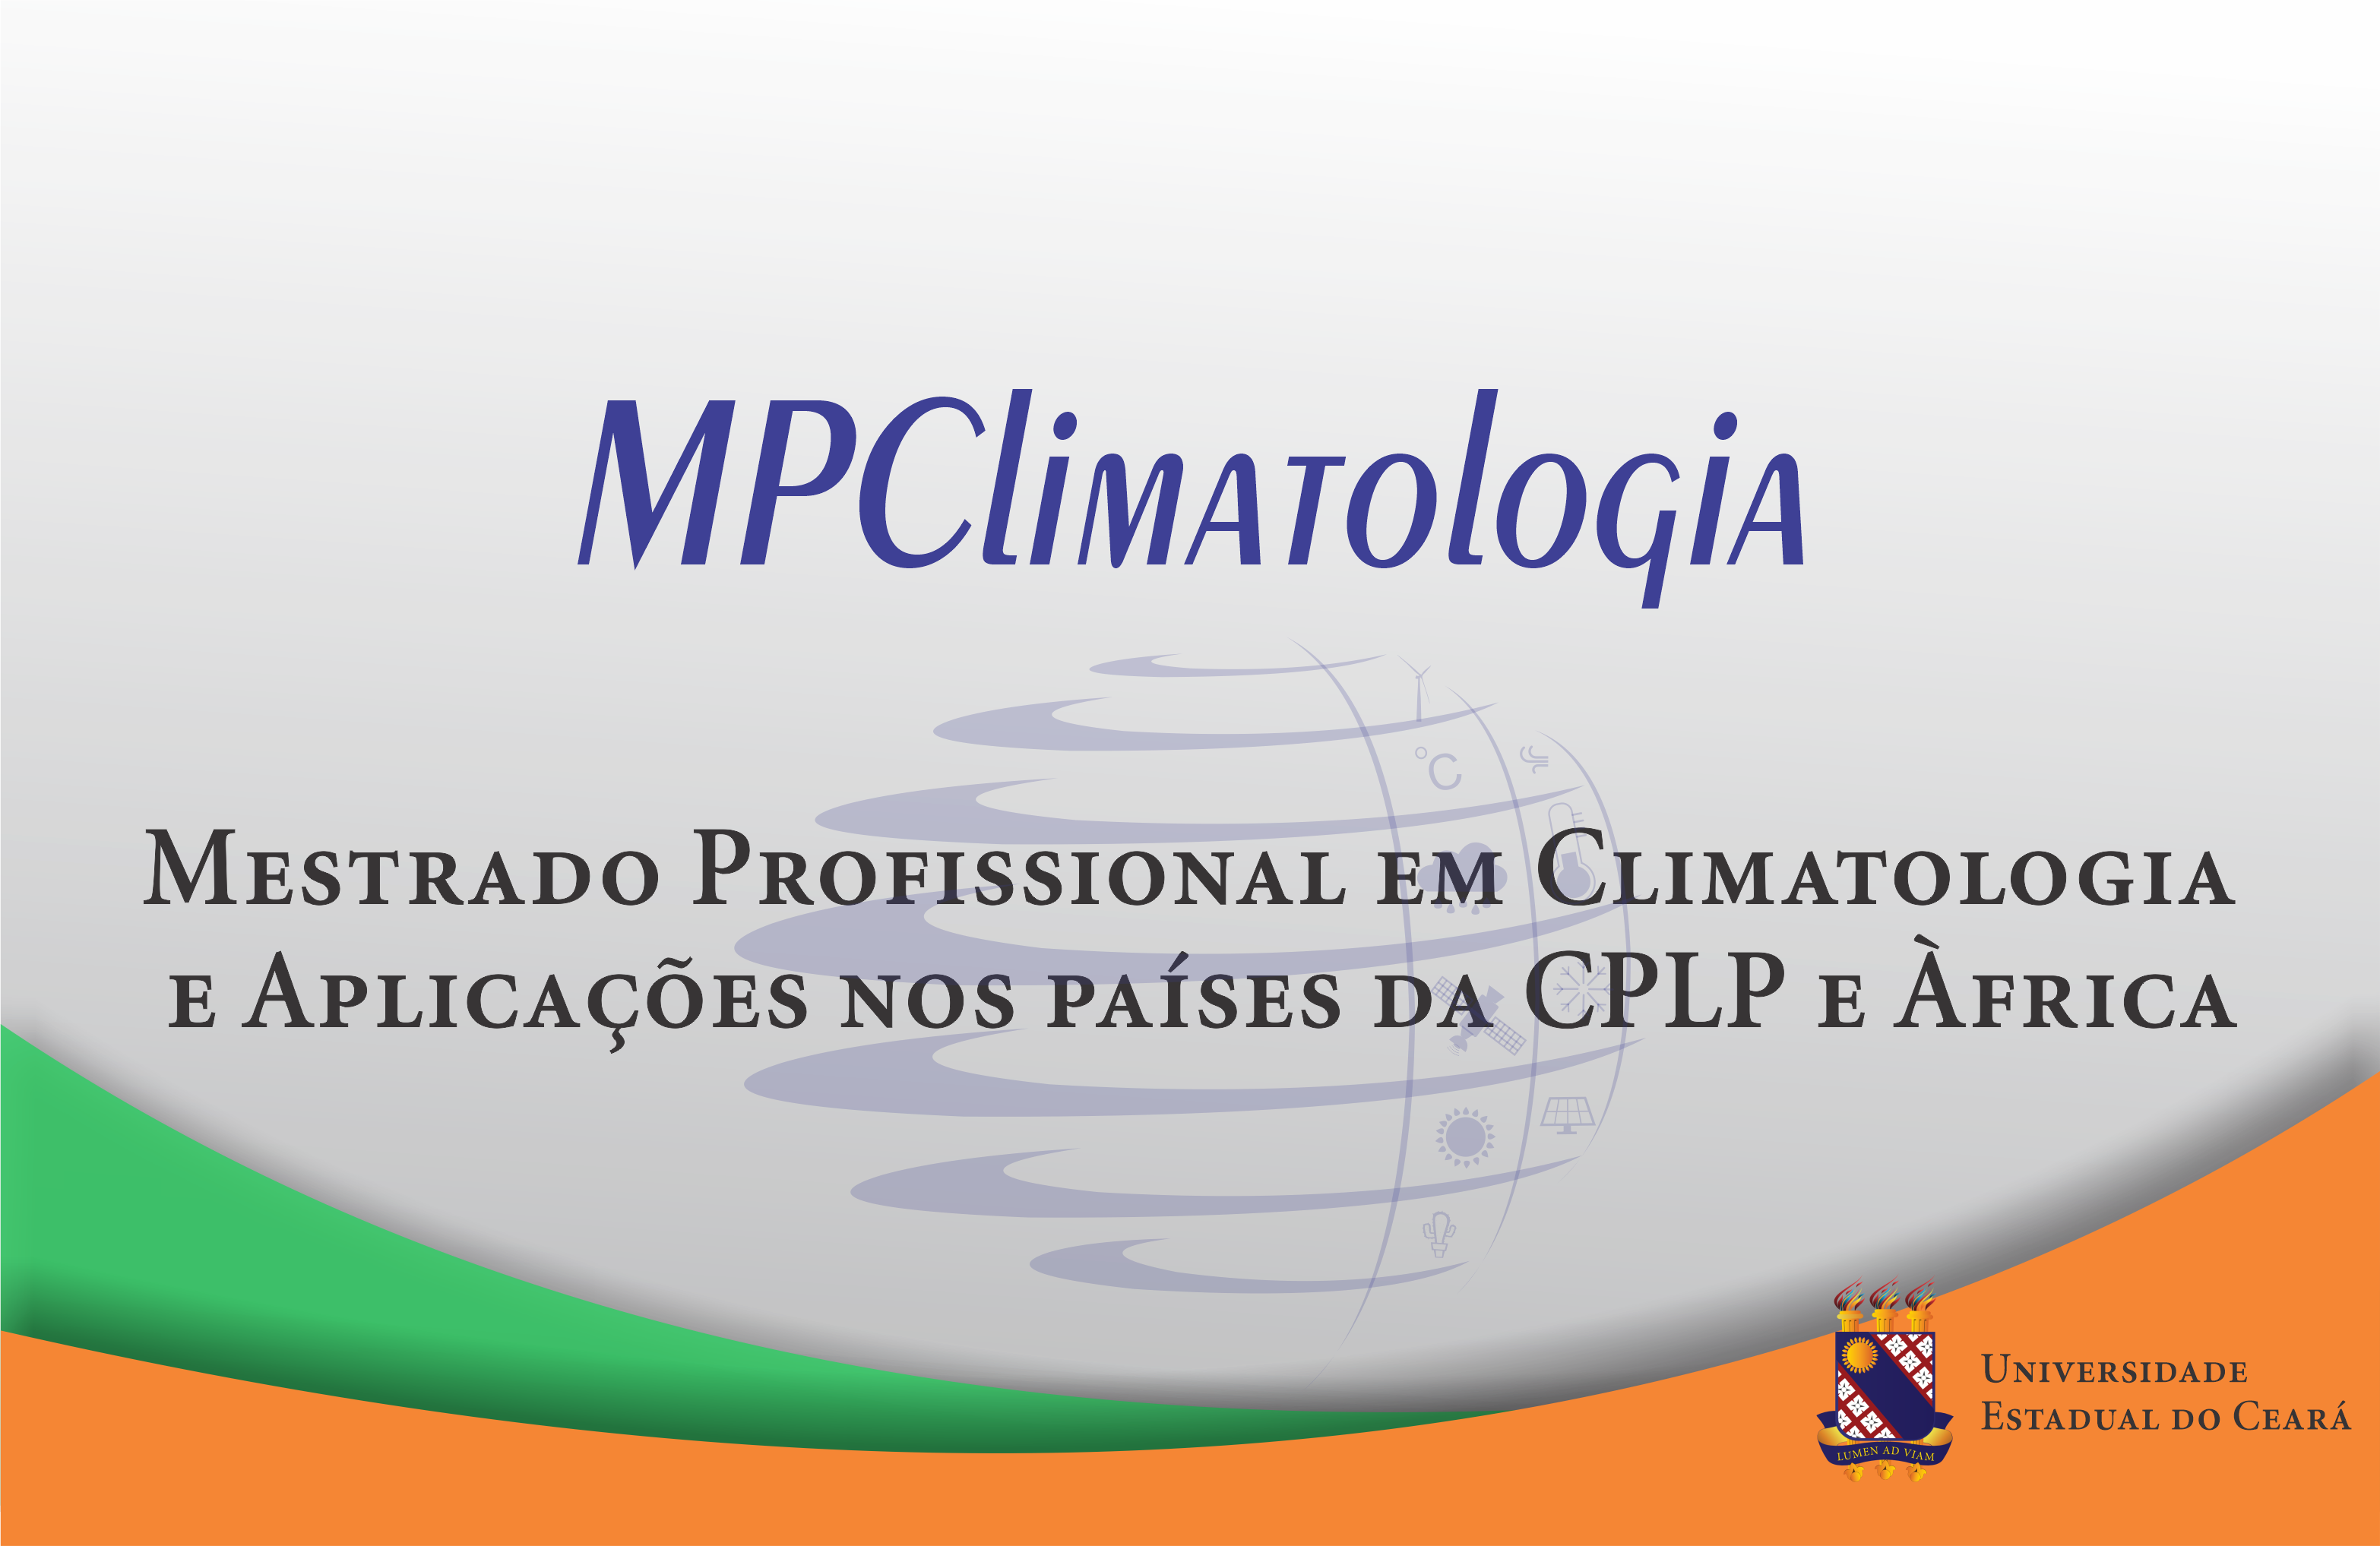 MPClimatologia